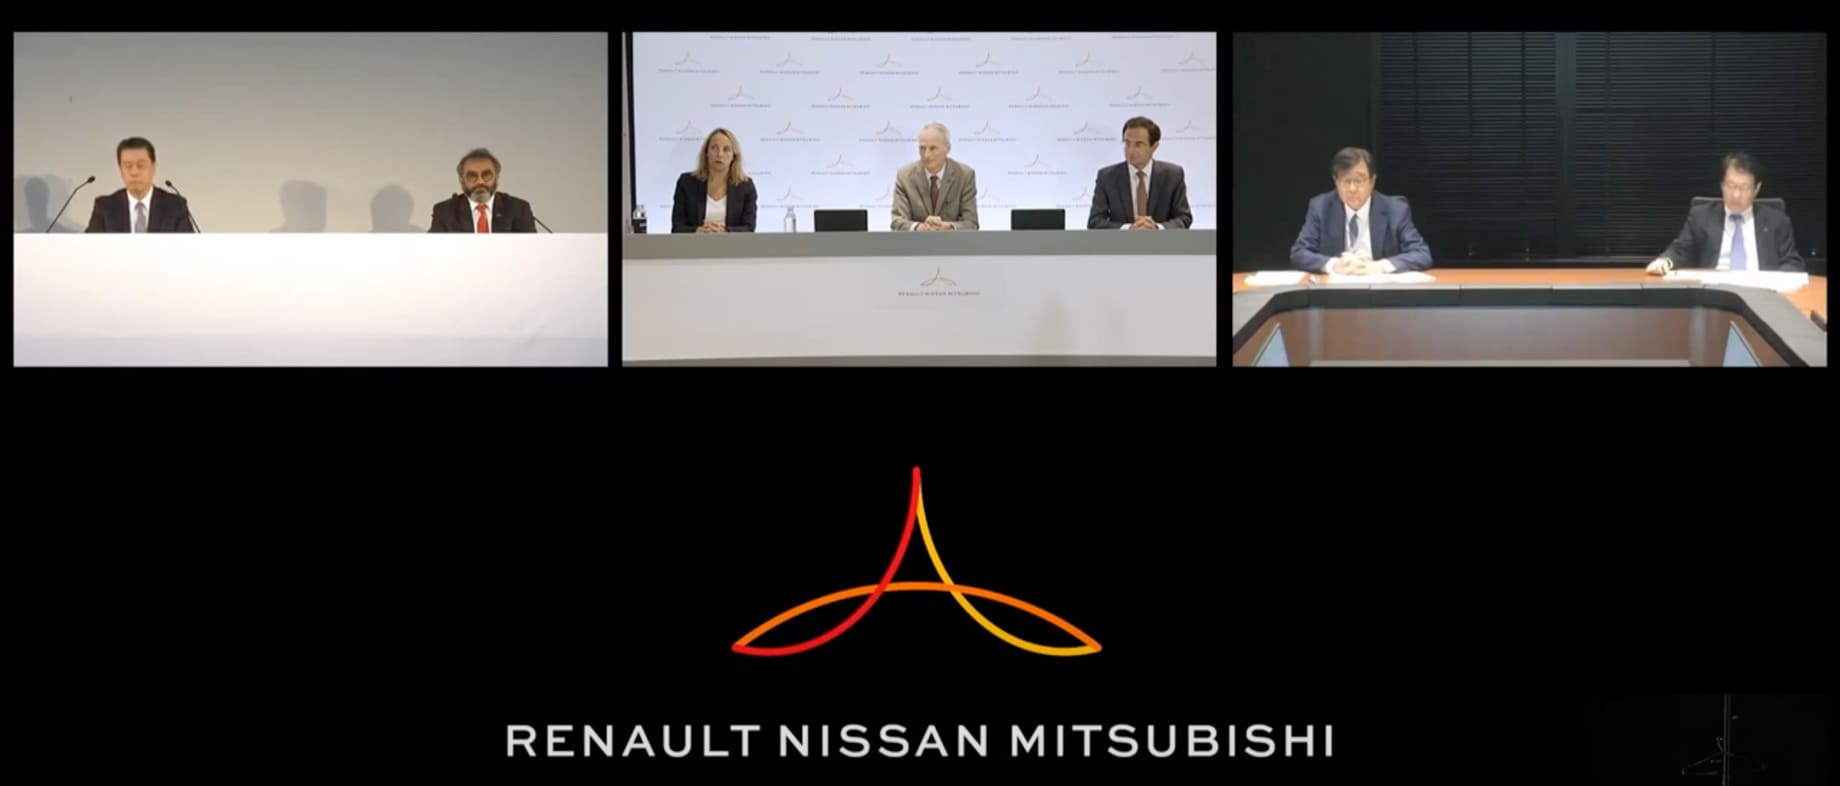 Как Renault-Nissan-Mitsubishi планирует выходить из кризиса